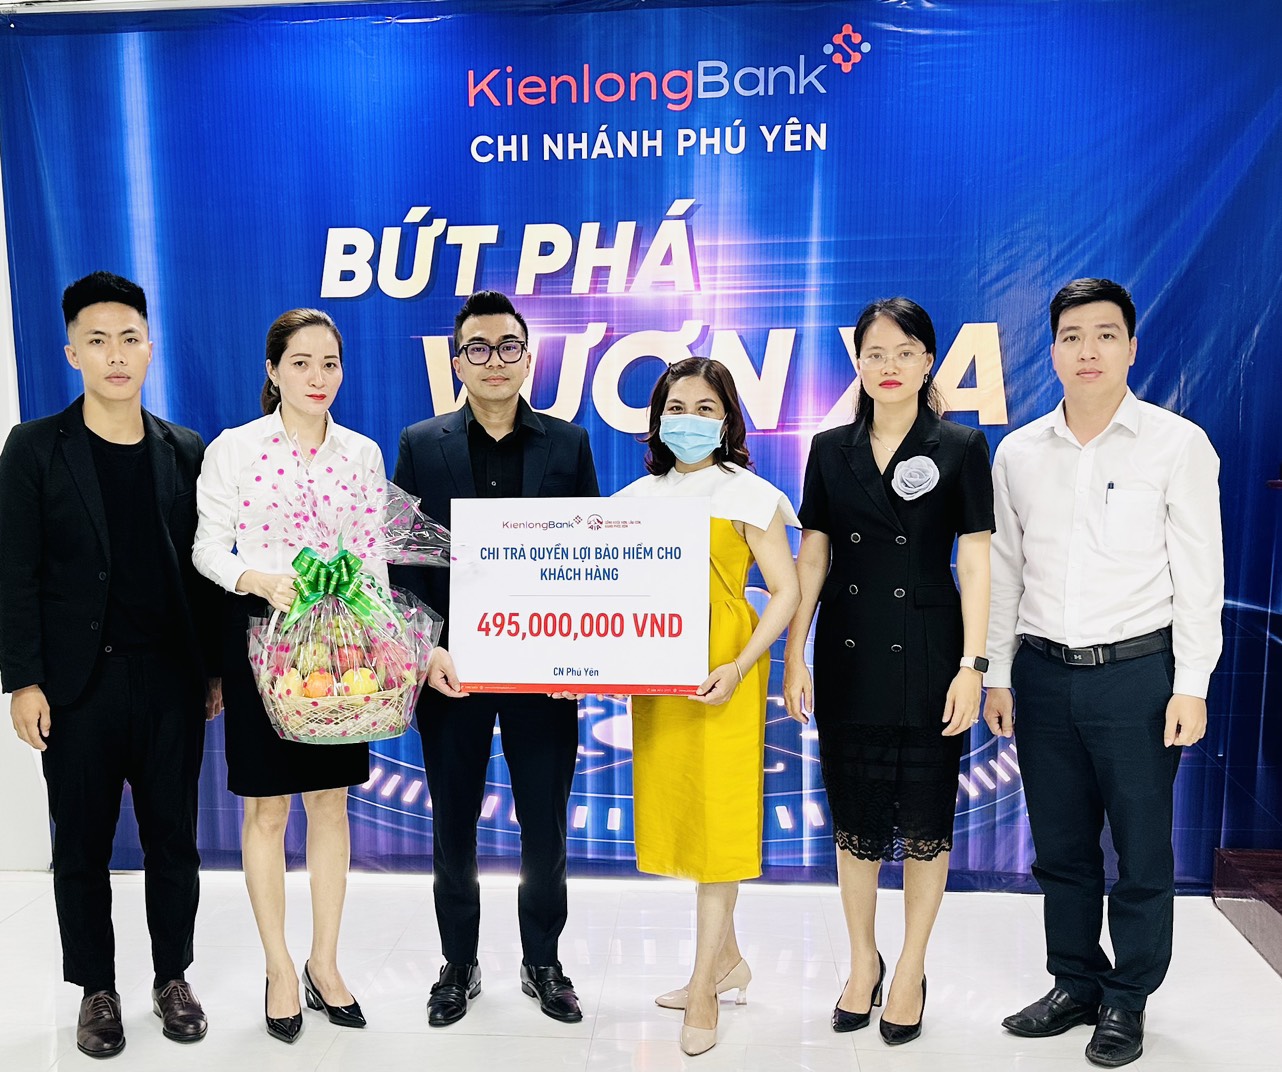 KienlongBank - Bảo hiểm AIA: chi trả bồi thường bảo hiểm 495 triệu đồng cho khách hàng tại Phú Yên